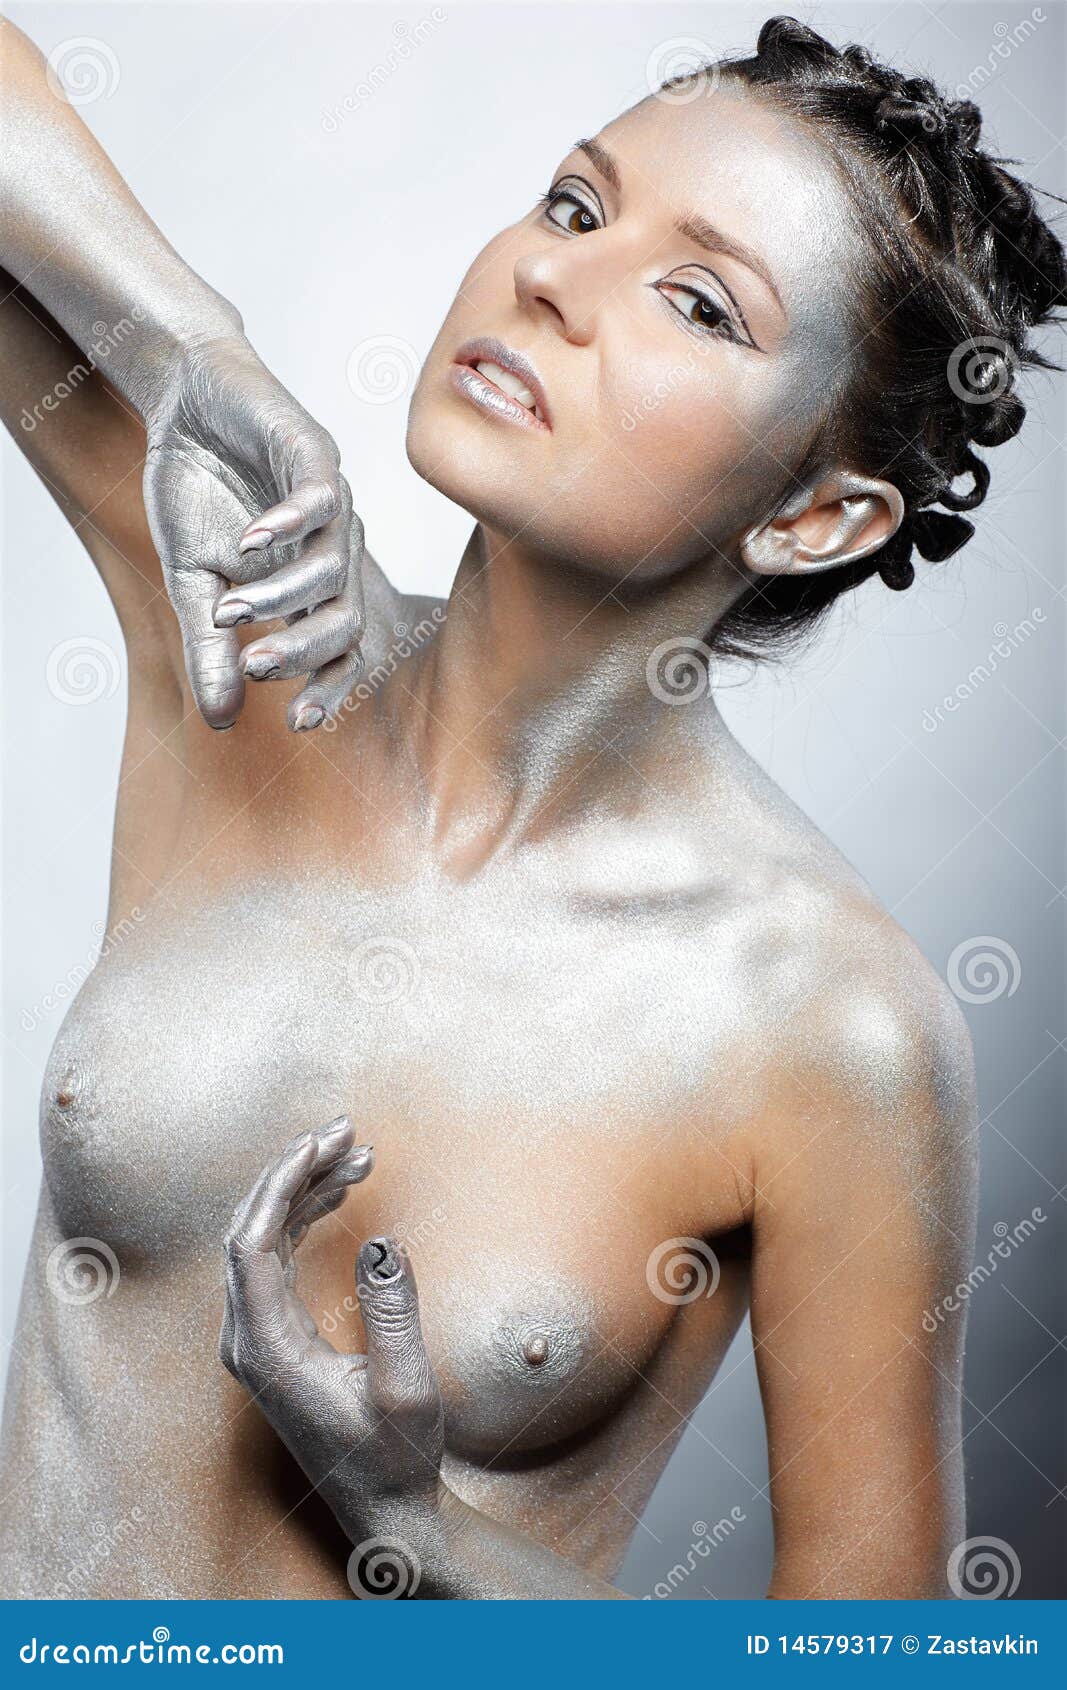 Precious Silver nude photos